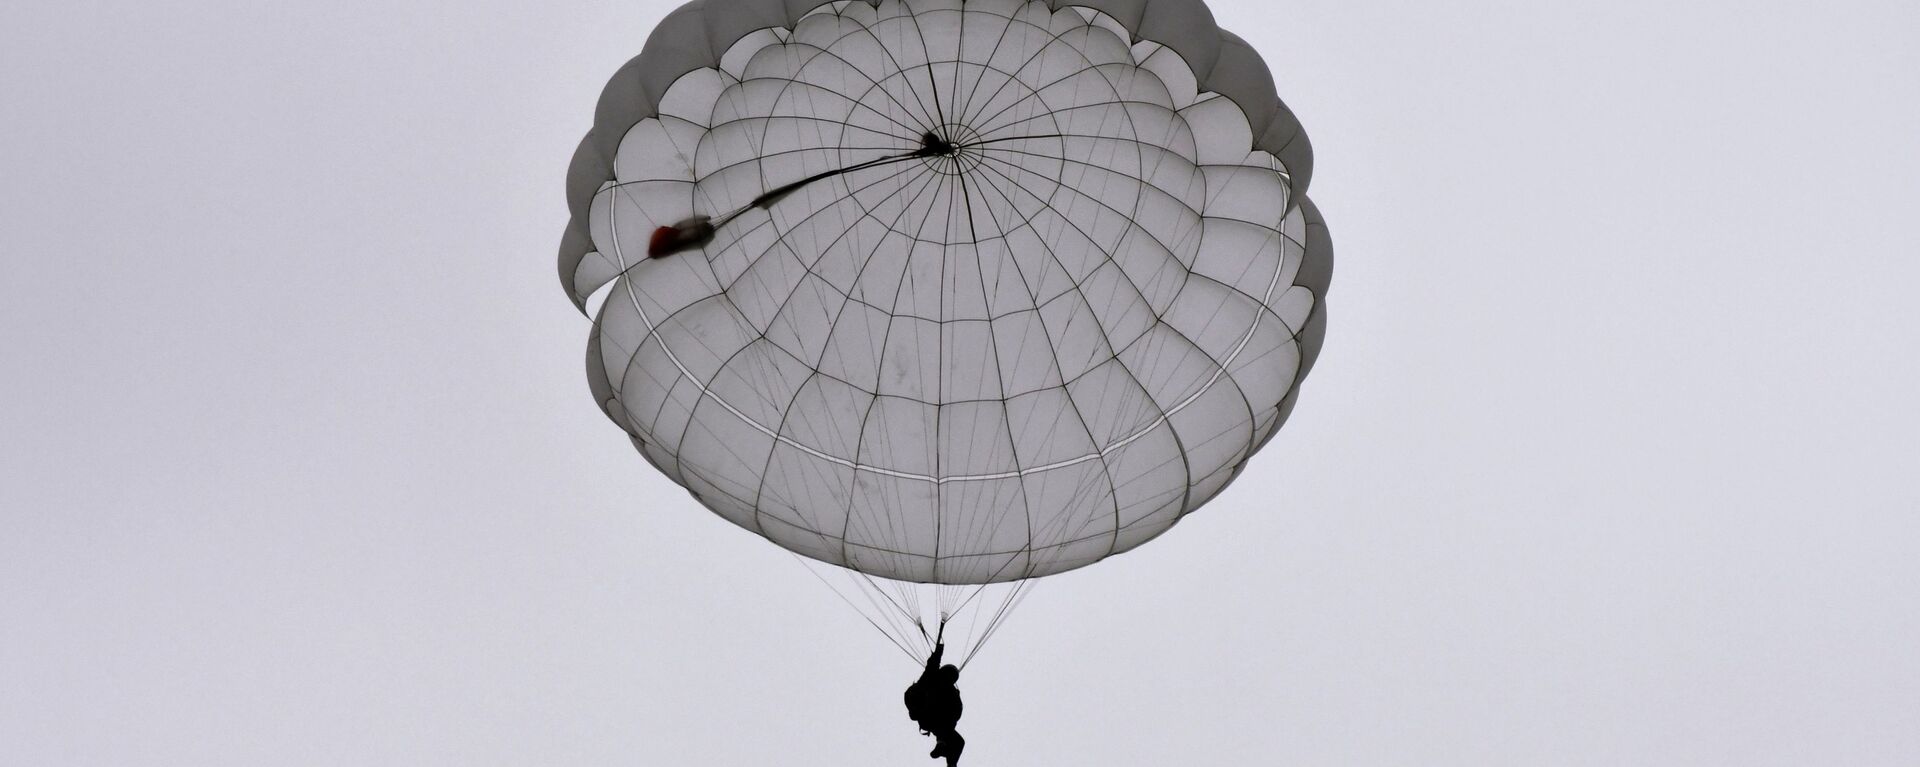 Una persona durante un salto de paracaídas (imagen referencial) - Sputnik Mundo, 1920, 05.03.2021